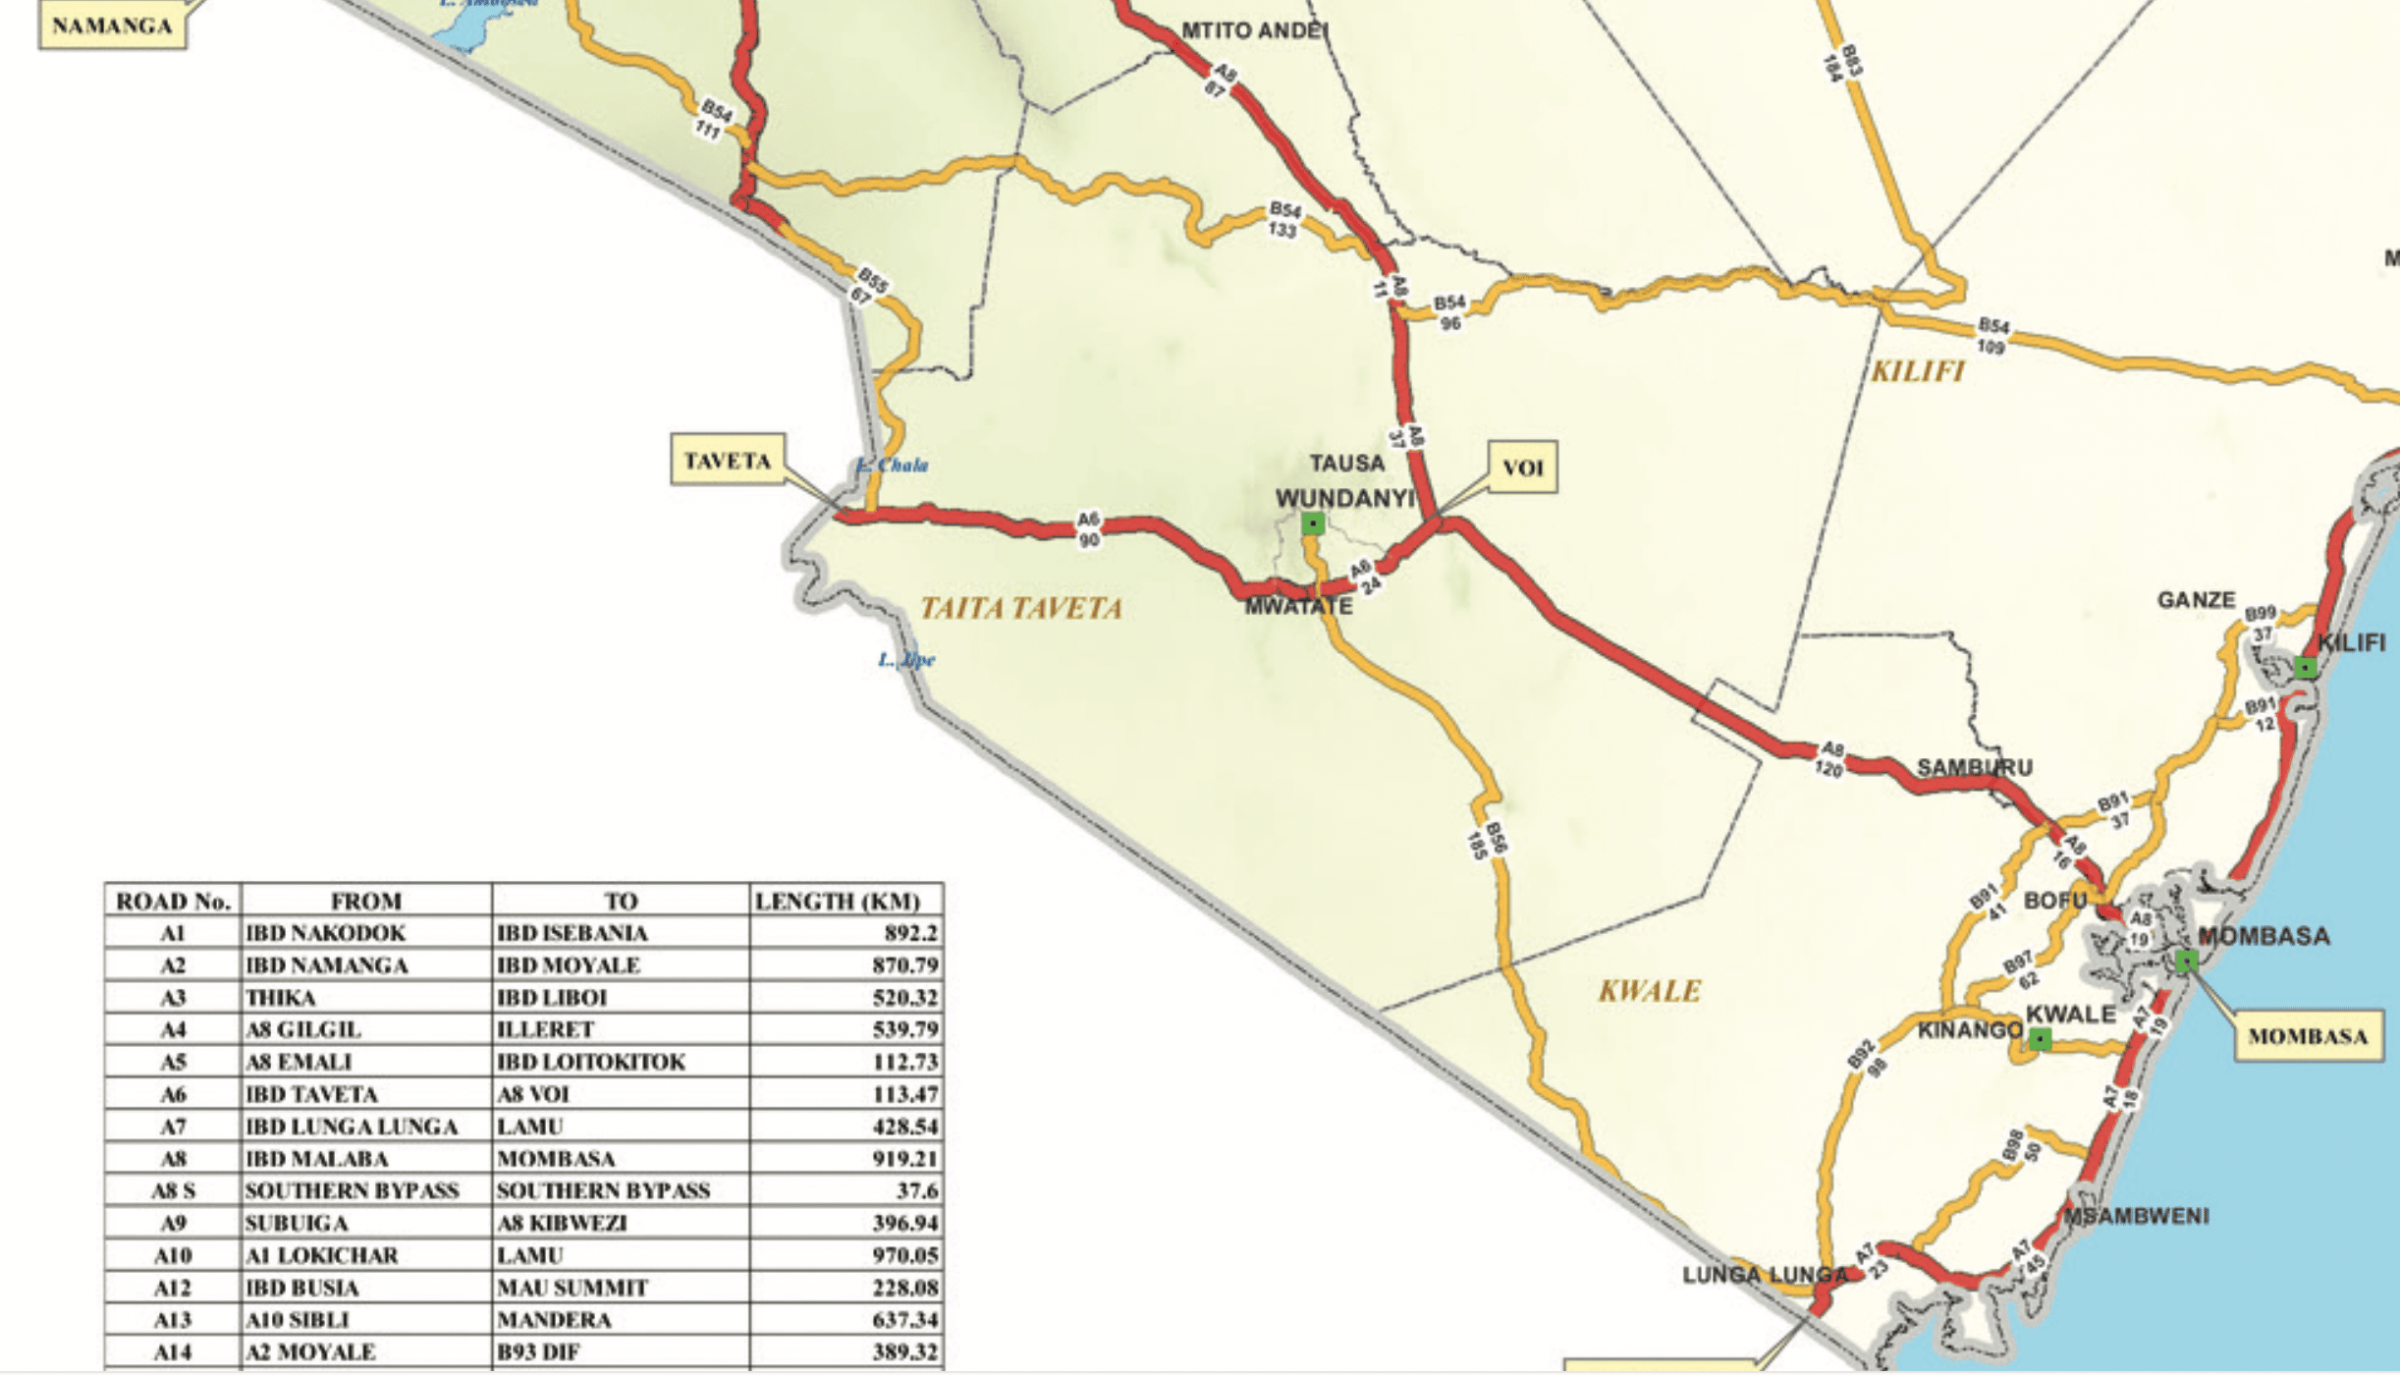 Cestni zemljevid Kenhe, kenijskega ANWB